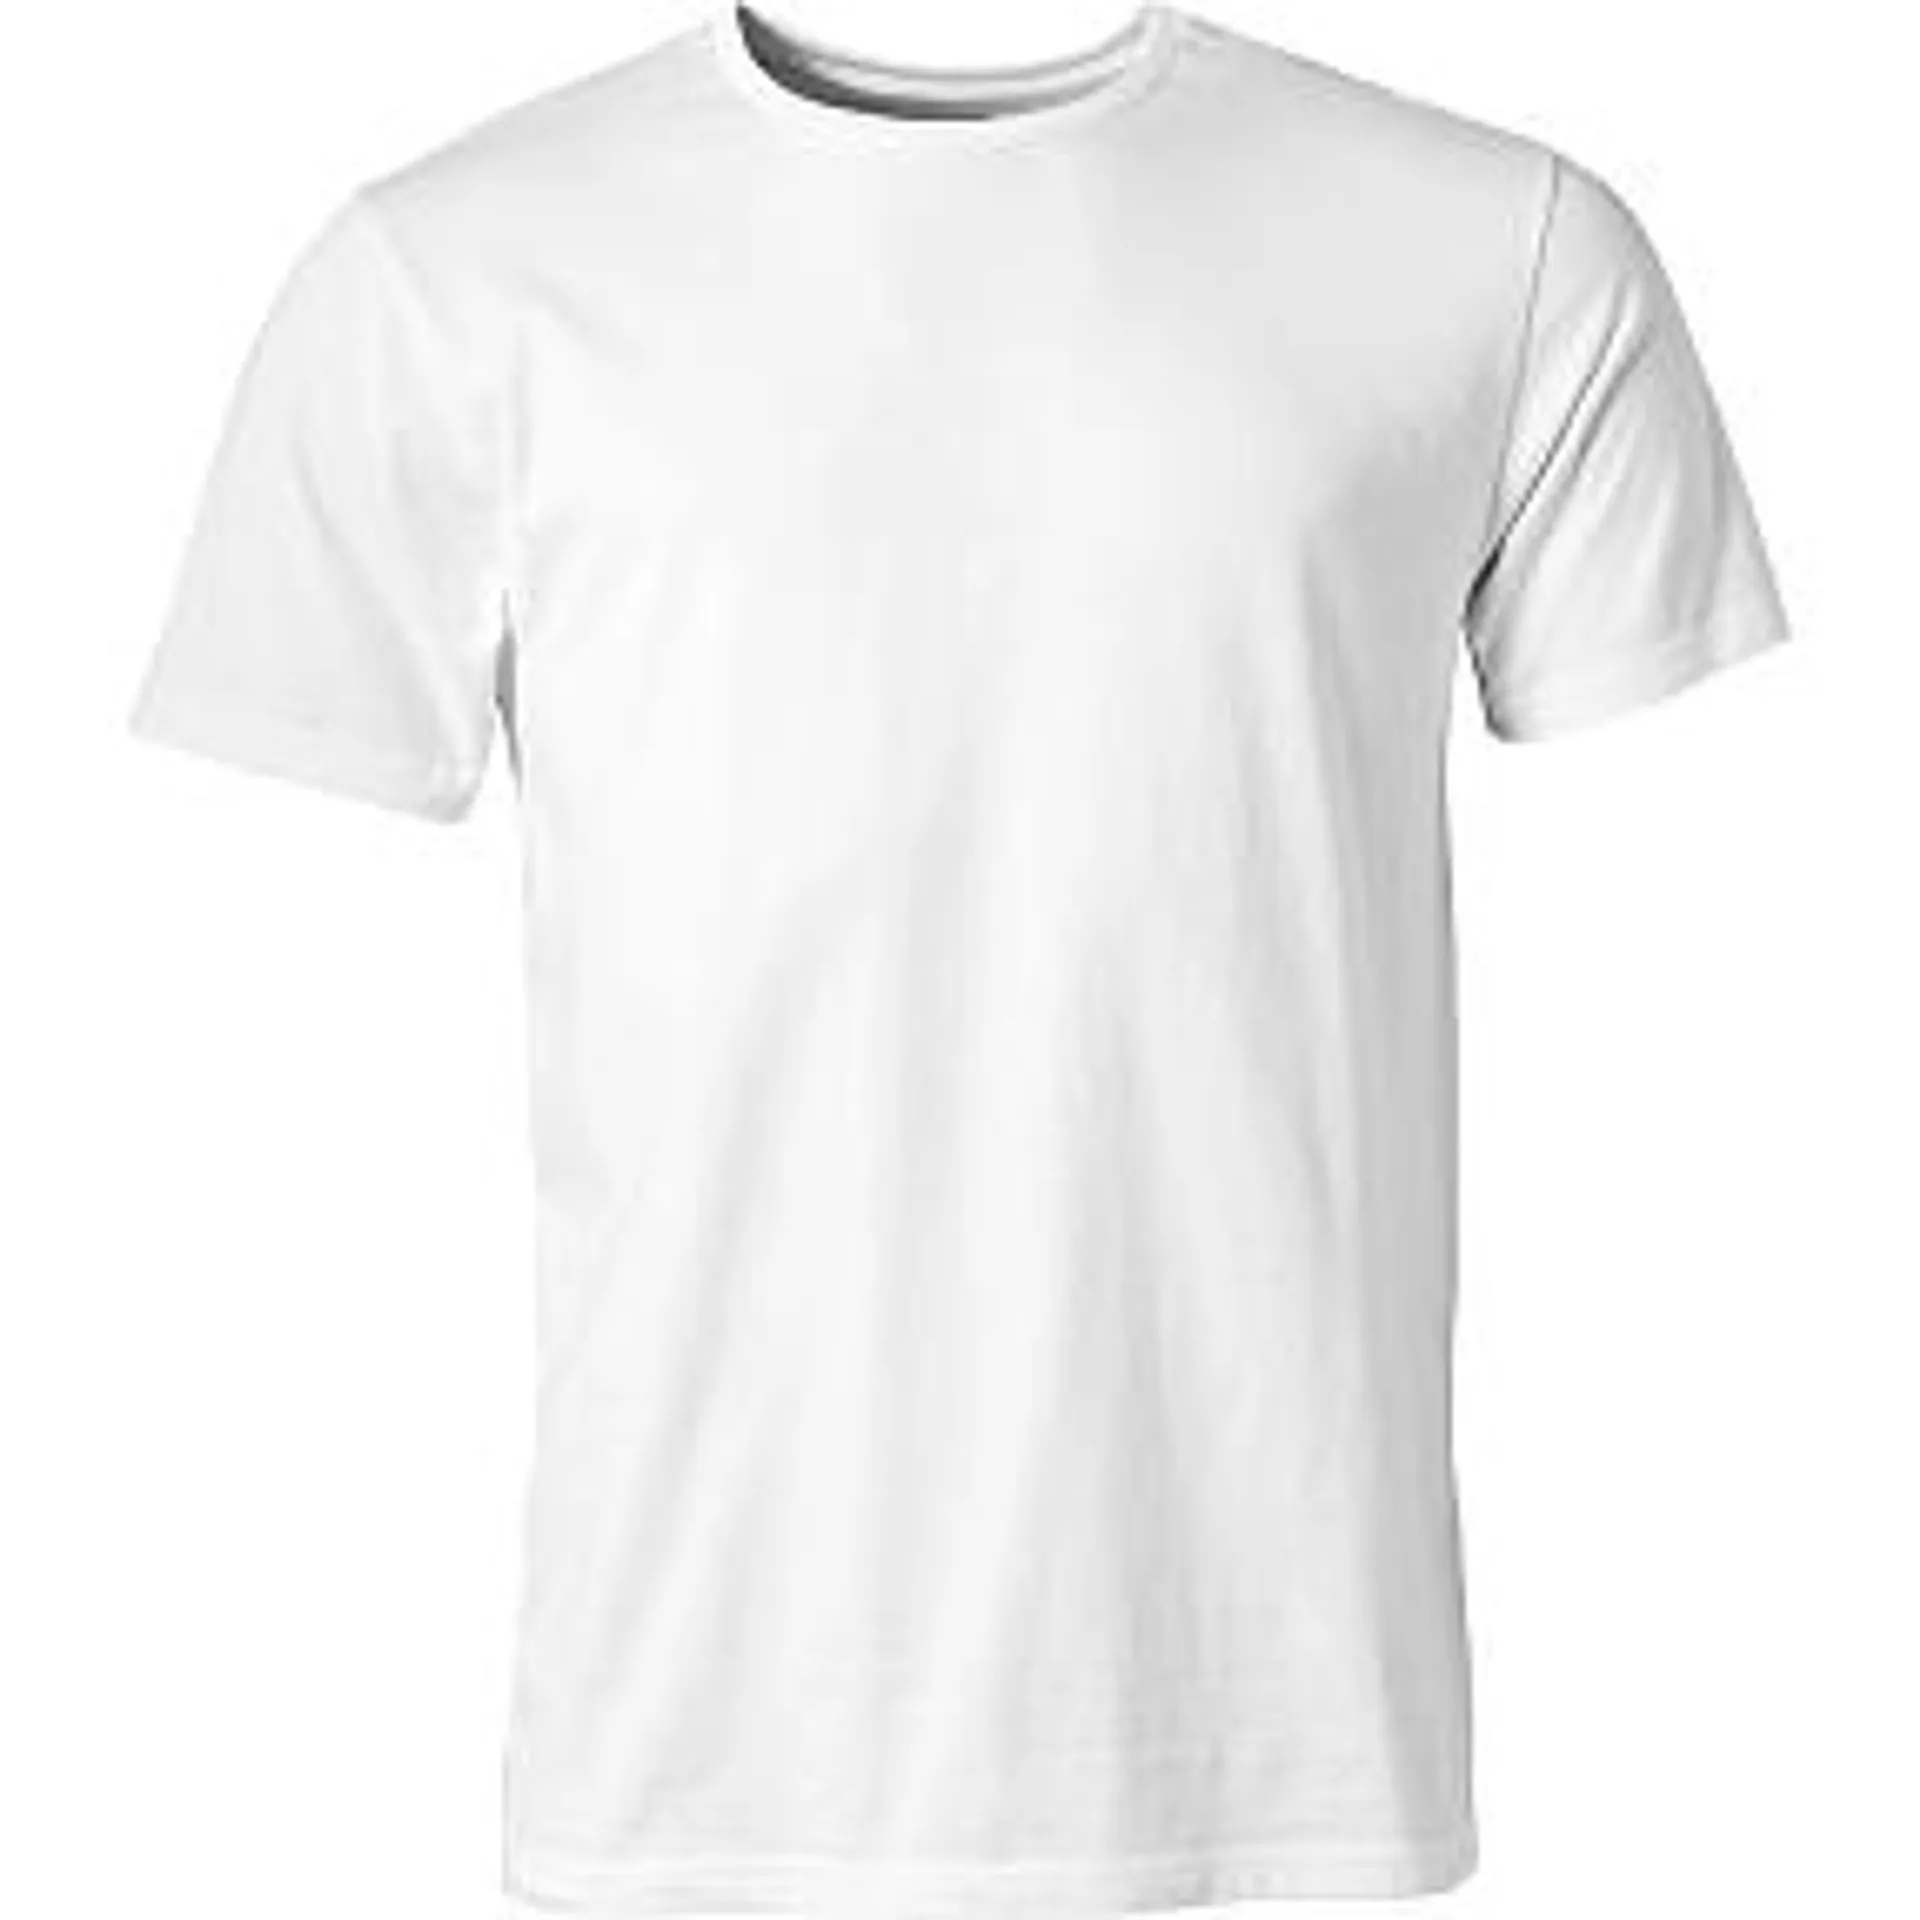 VRS herre T-shirt str. 2XL - hvid